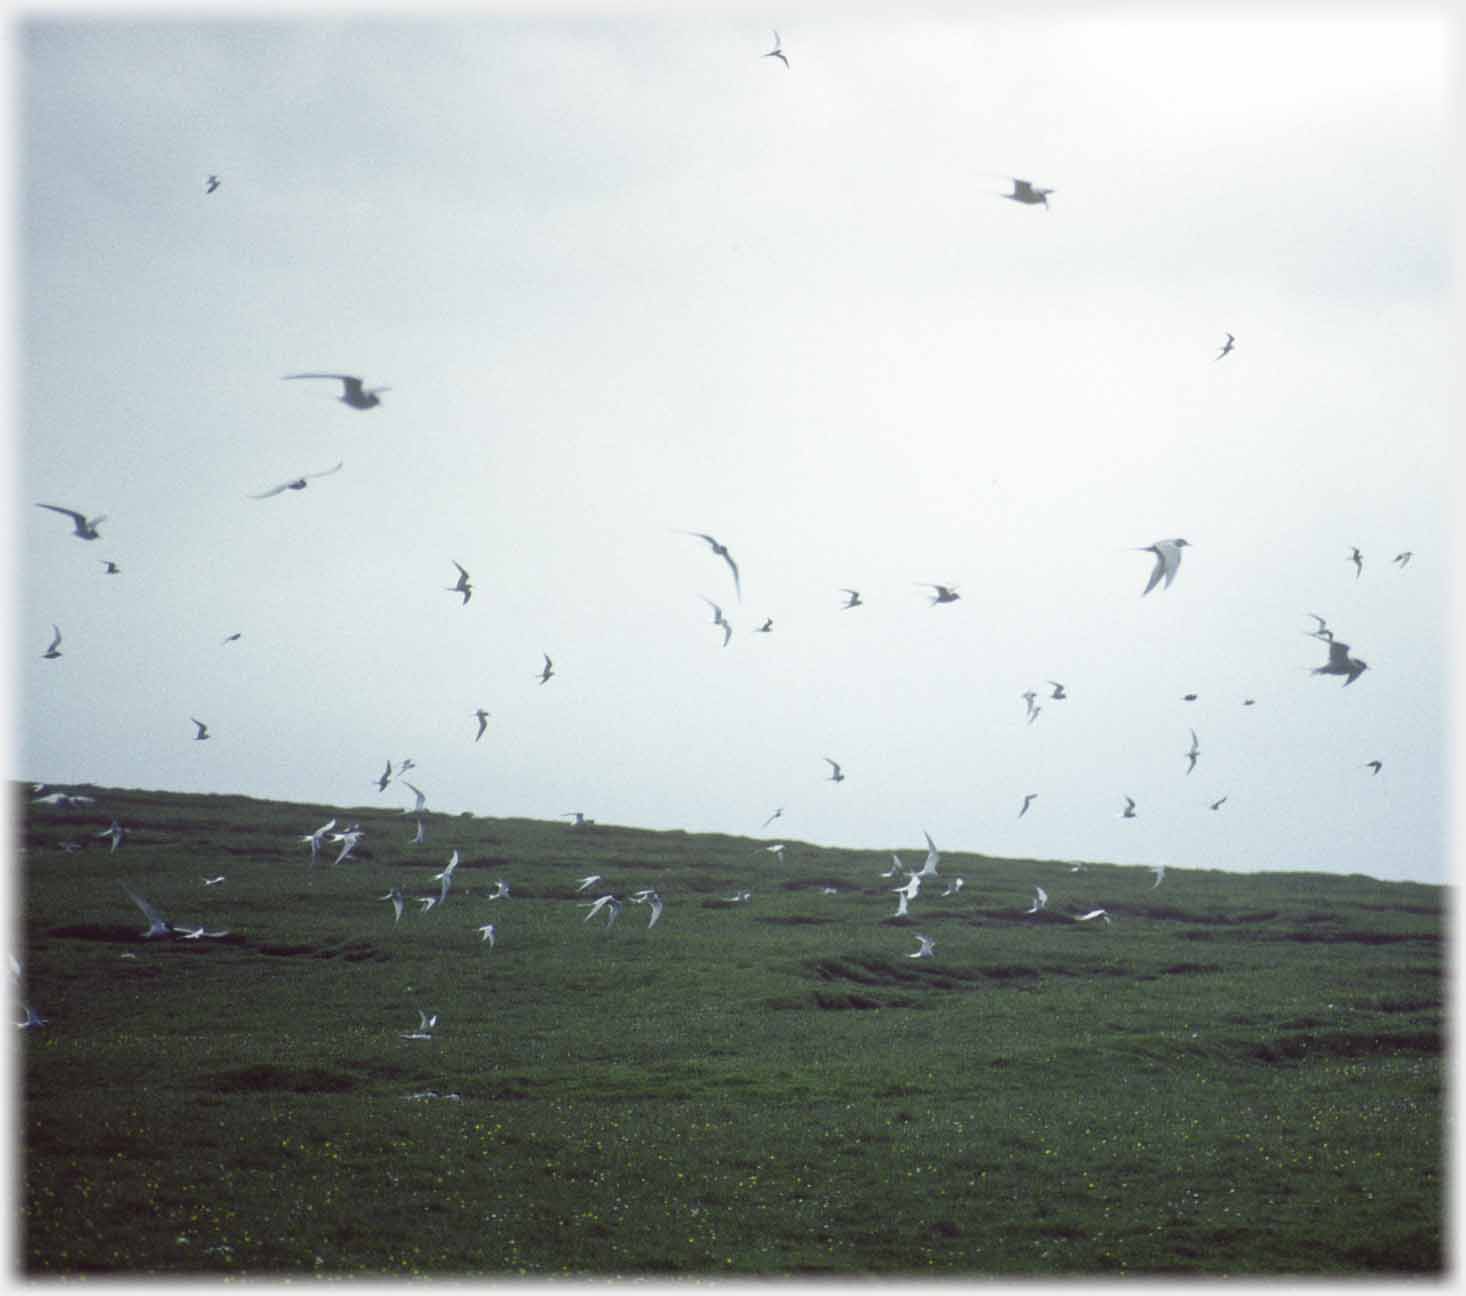 Many birds flying near ground.